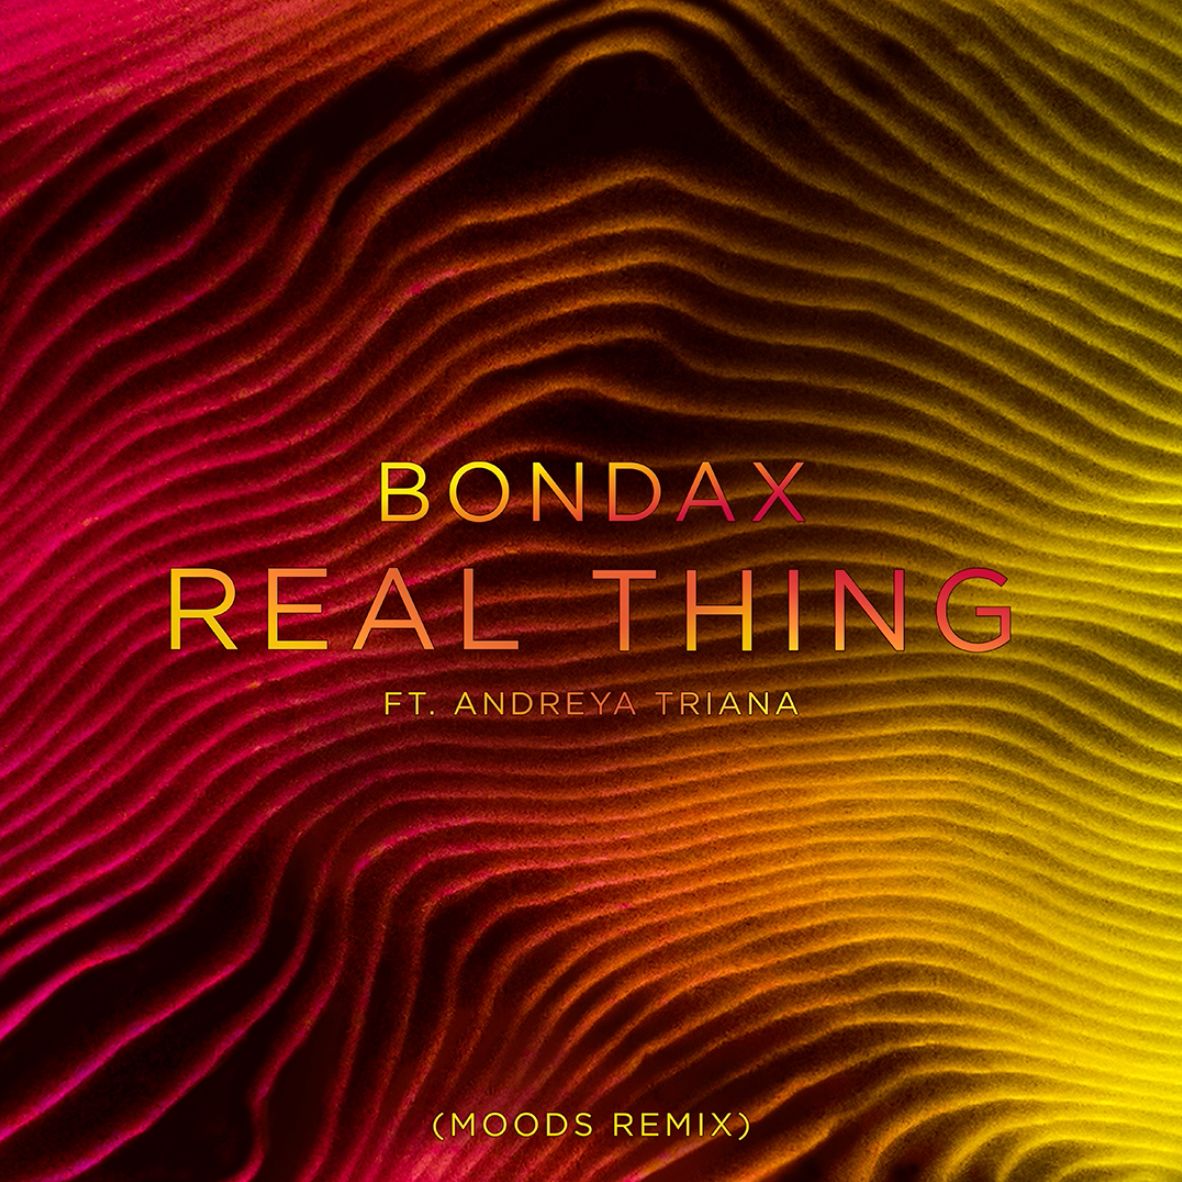 Letöltés Bondax - Real Thing ft. Andreya Triana (Moods Remix)